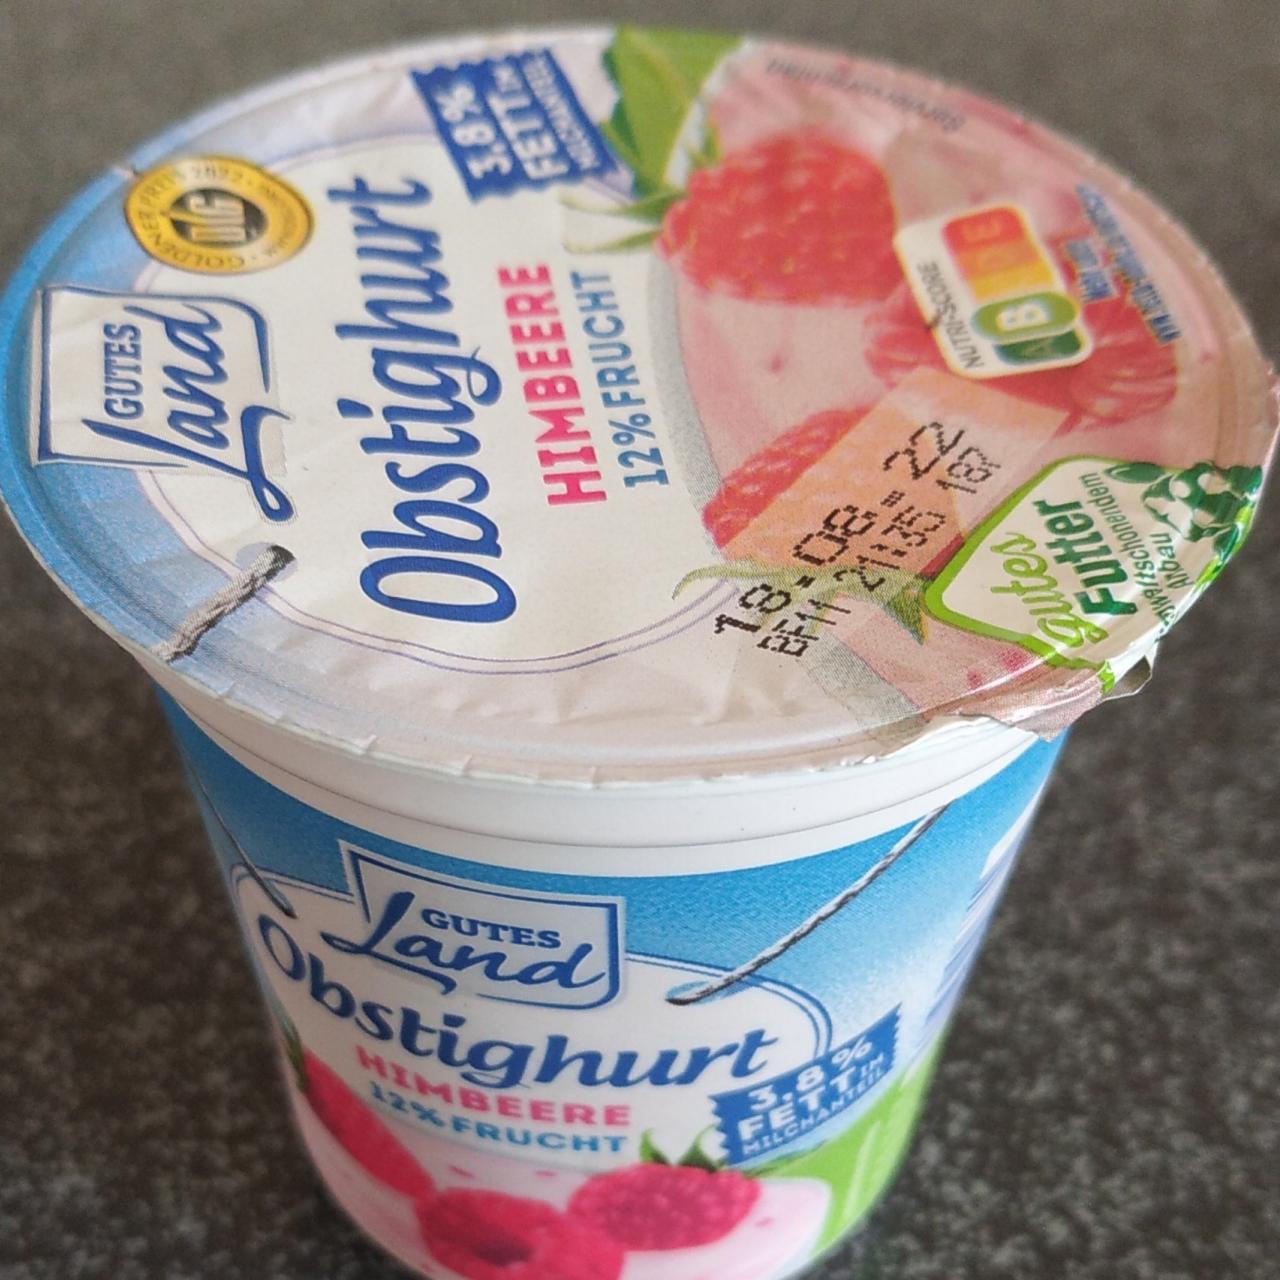 Фото - йогурт с клубникой Gutes land